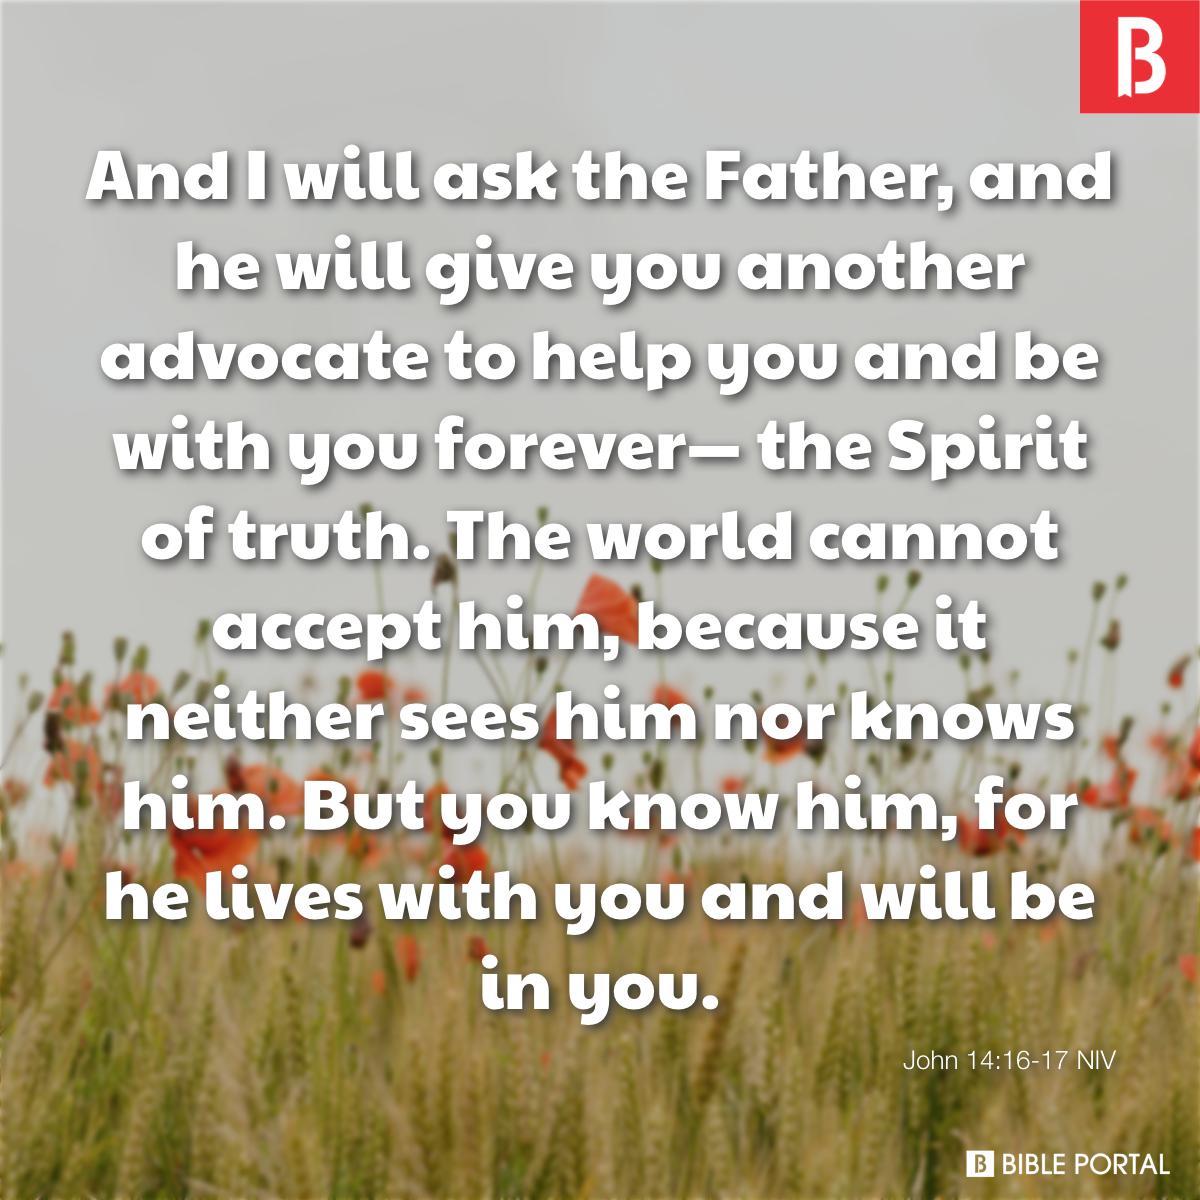 John 14:16-17 NIV